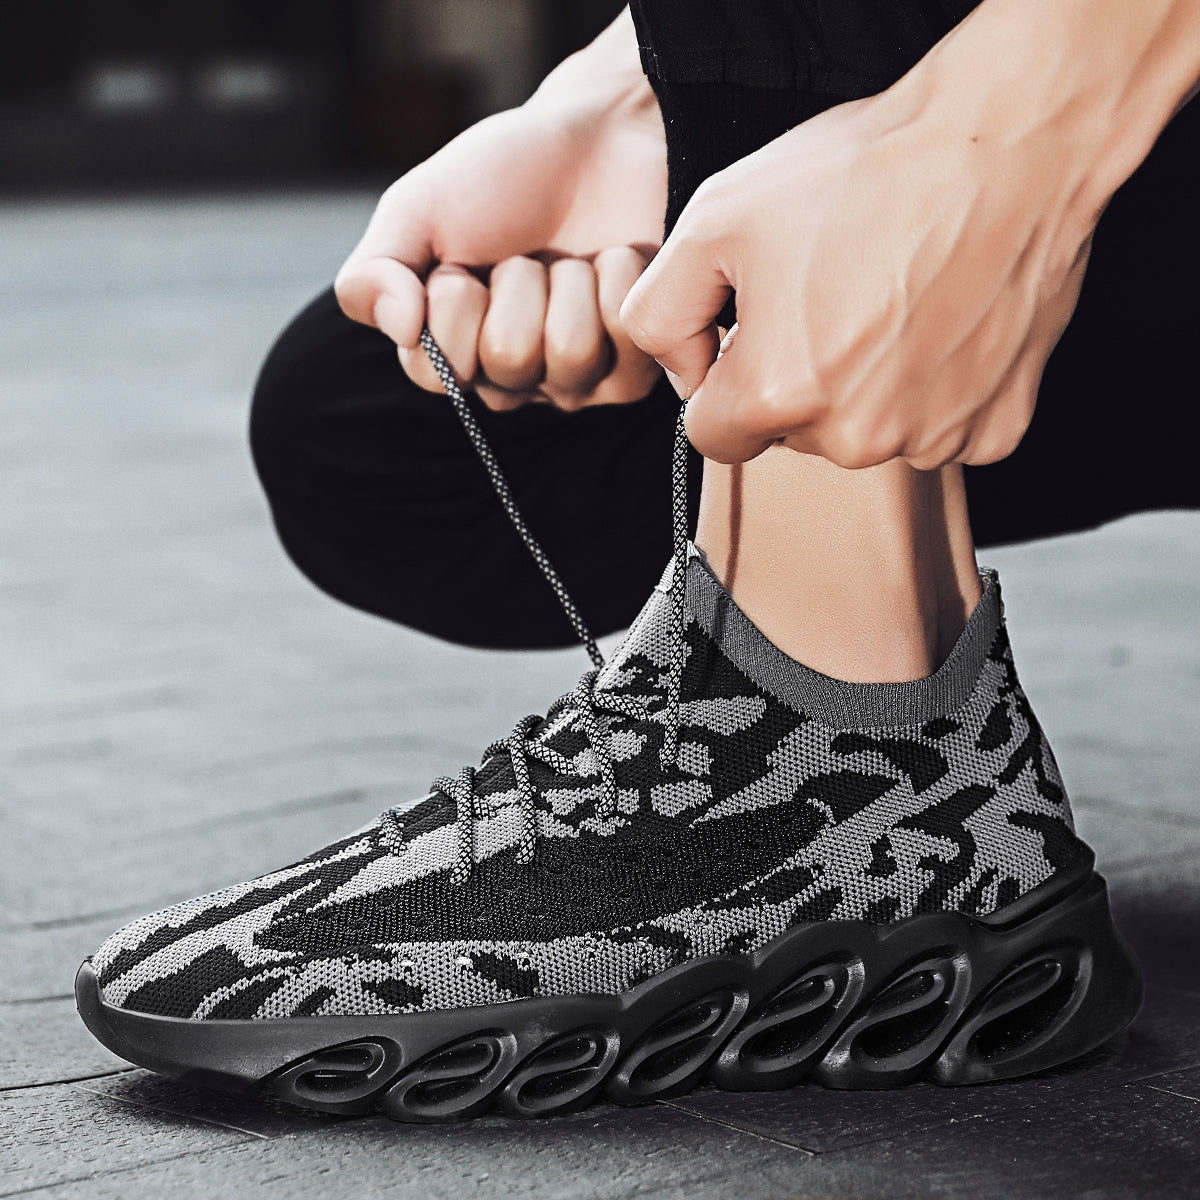 KRAKEN 'Python Legend' X9X Sneakers